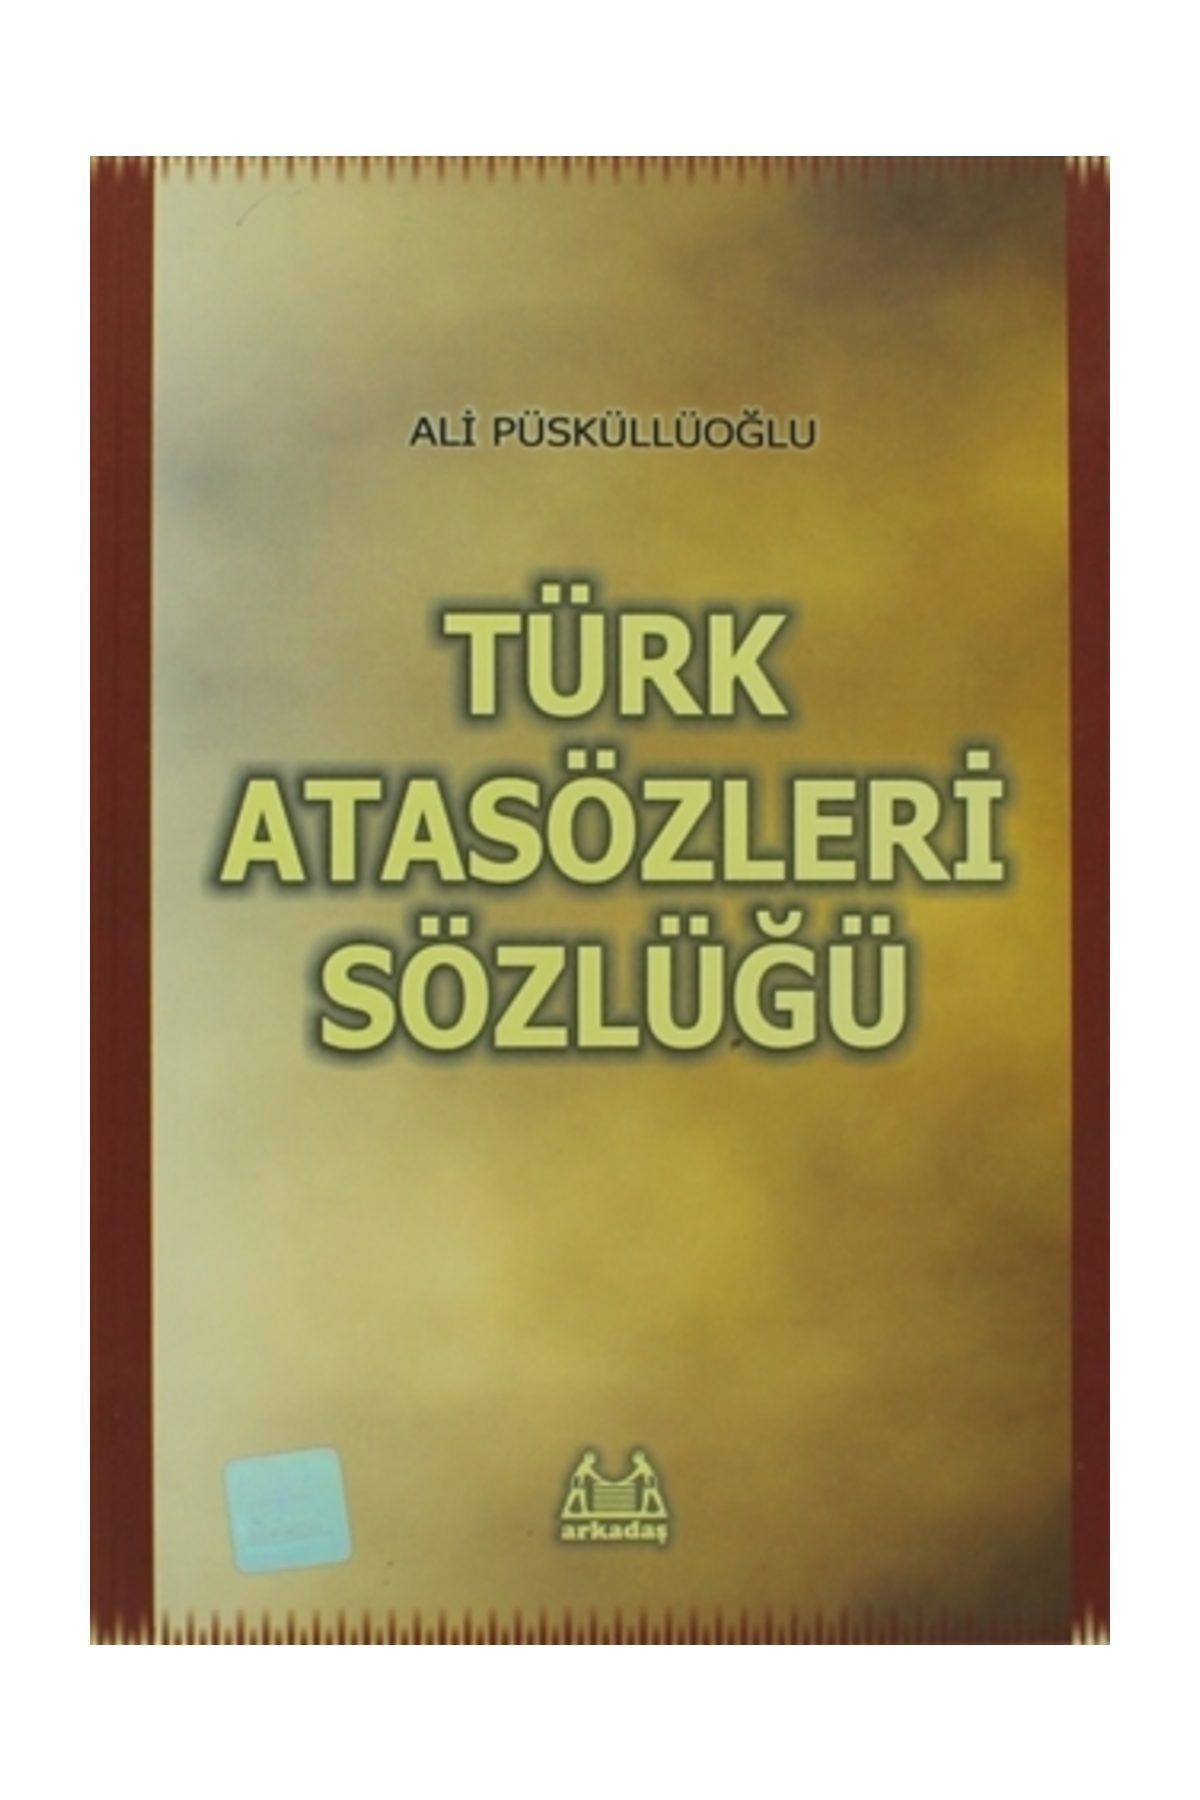 Arkadaş Yayıncılık Türk Atasözleri Sözlüğü - Ali Püsküllüoğlu